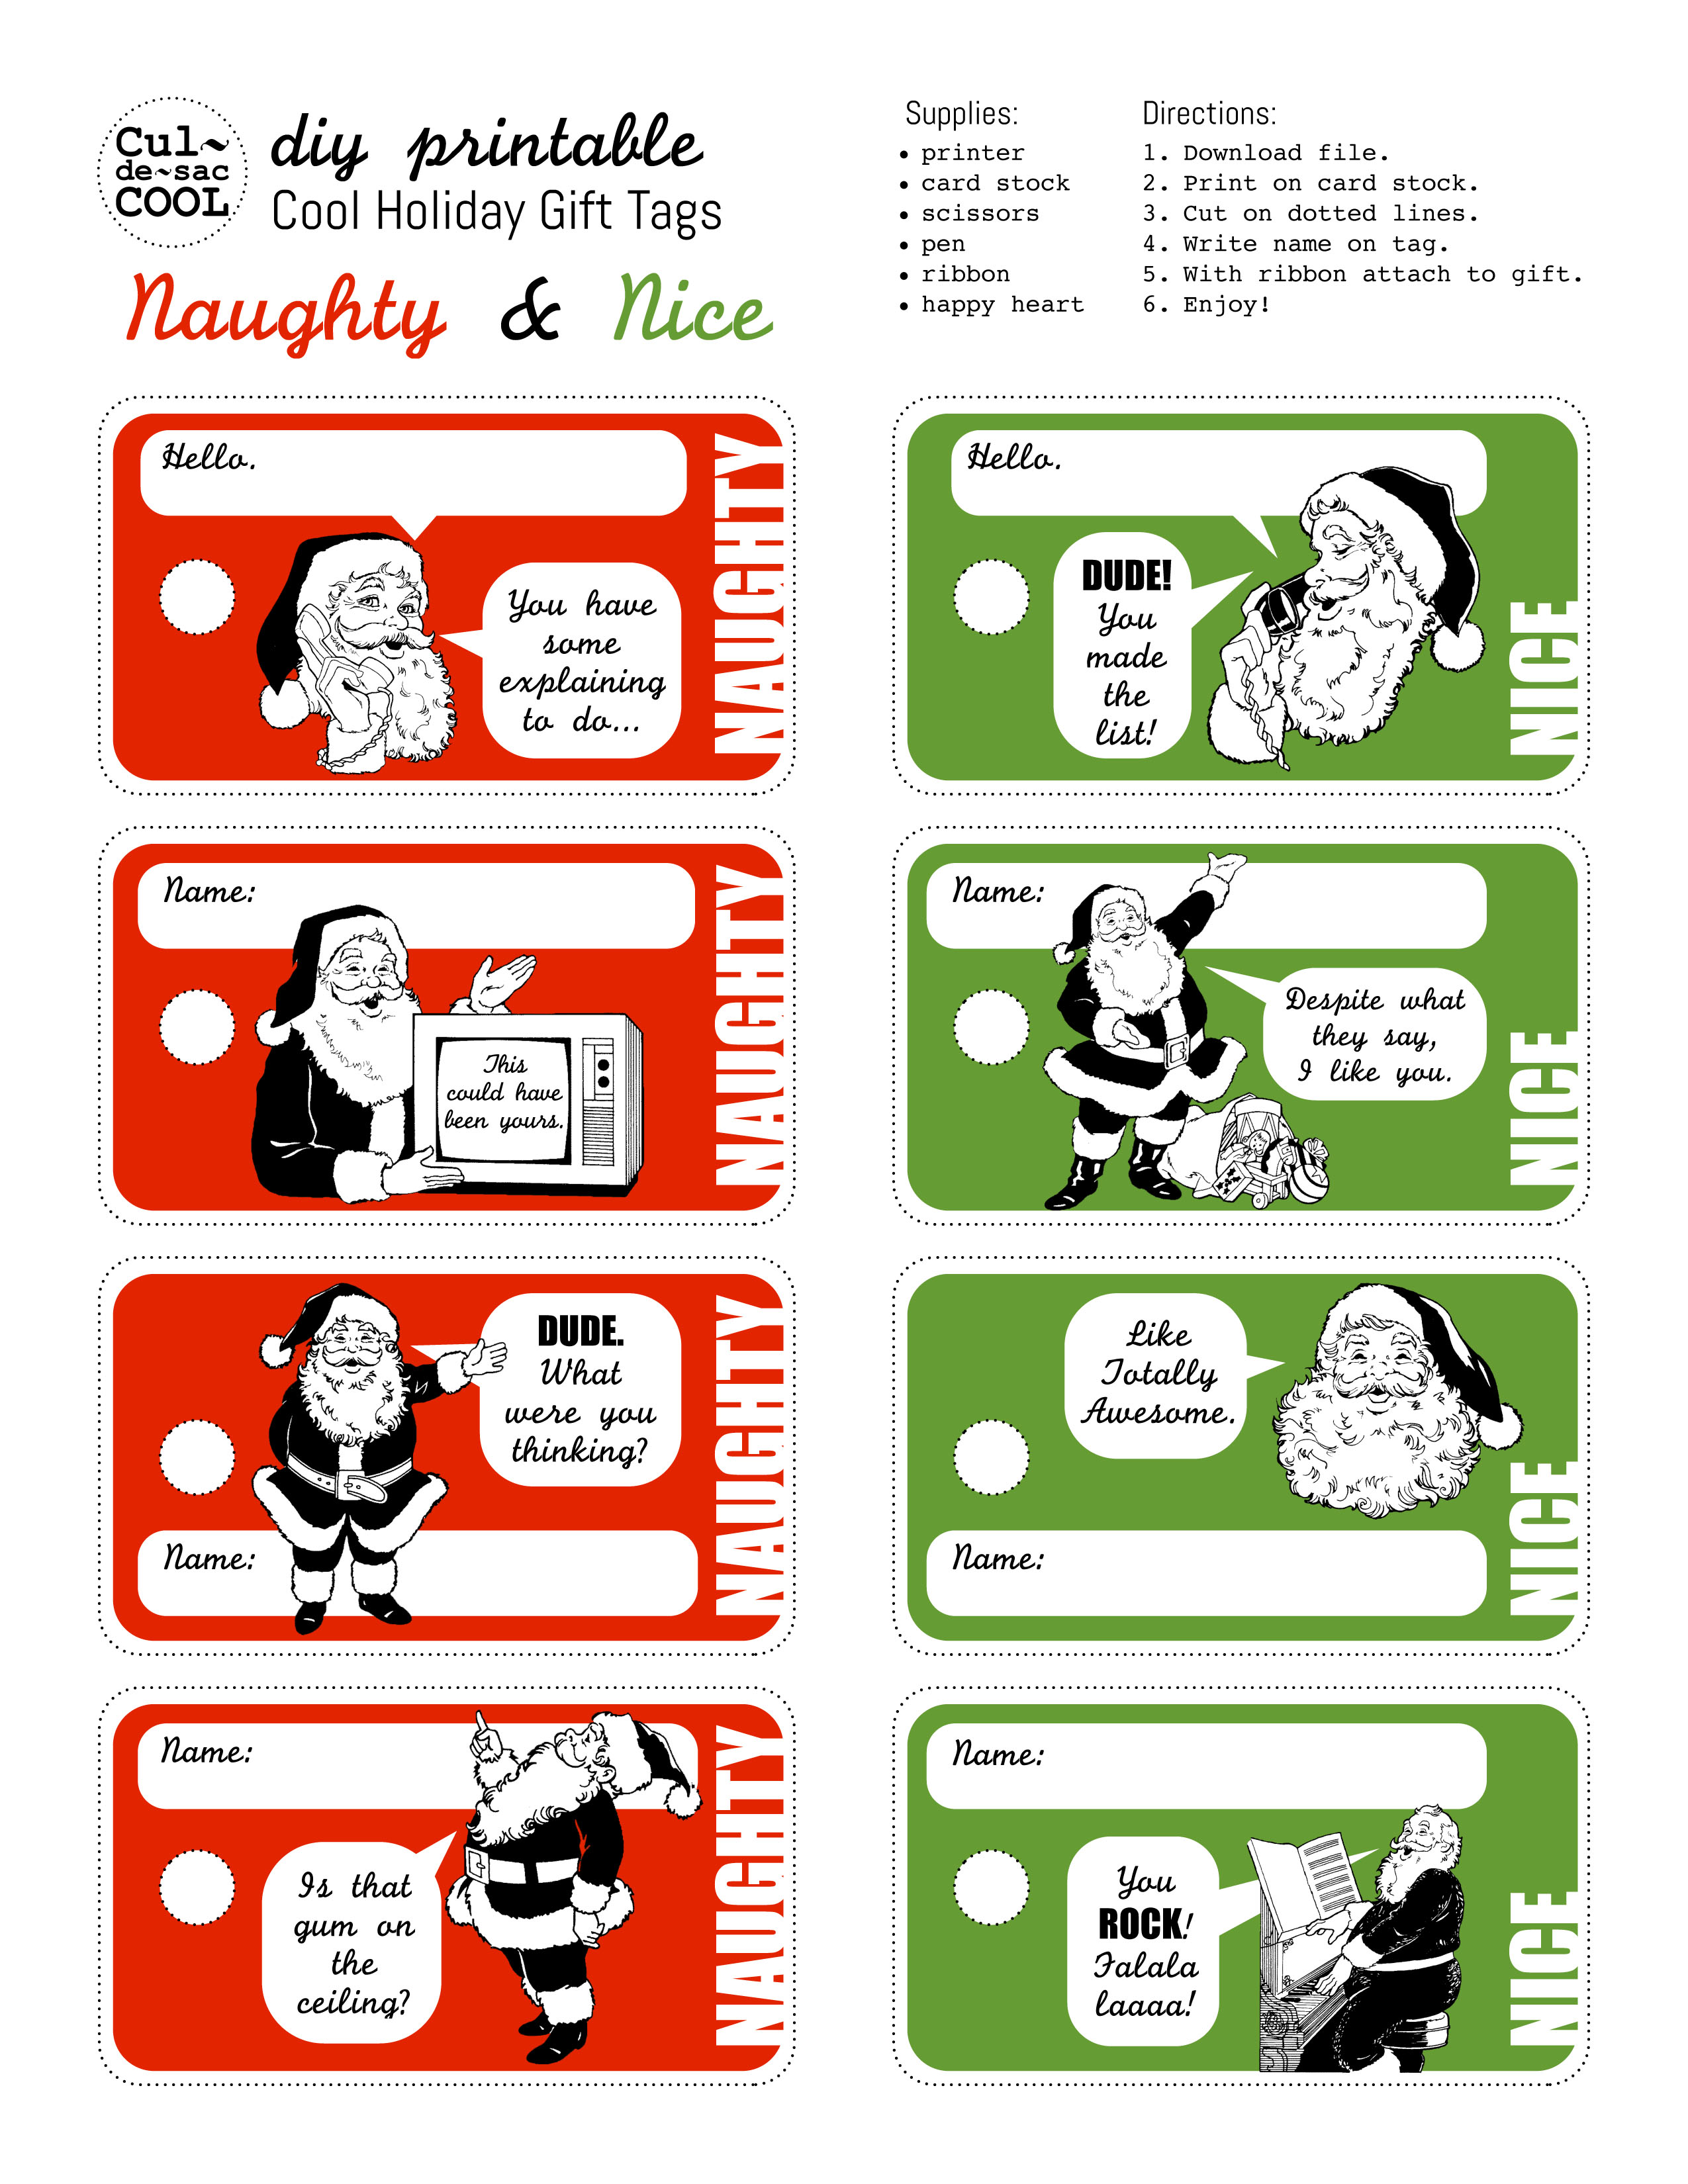 diy-printable-holiday-gift-tags-naughty-nice